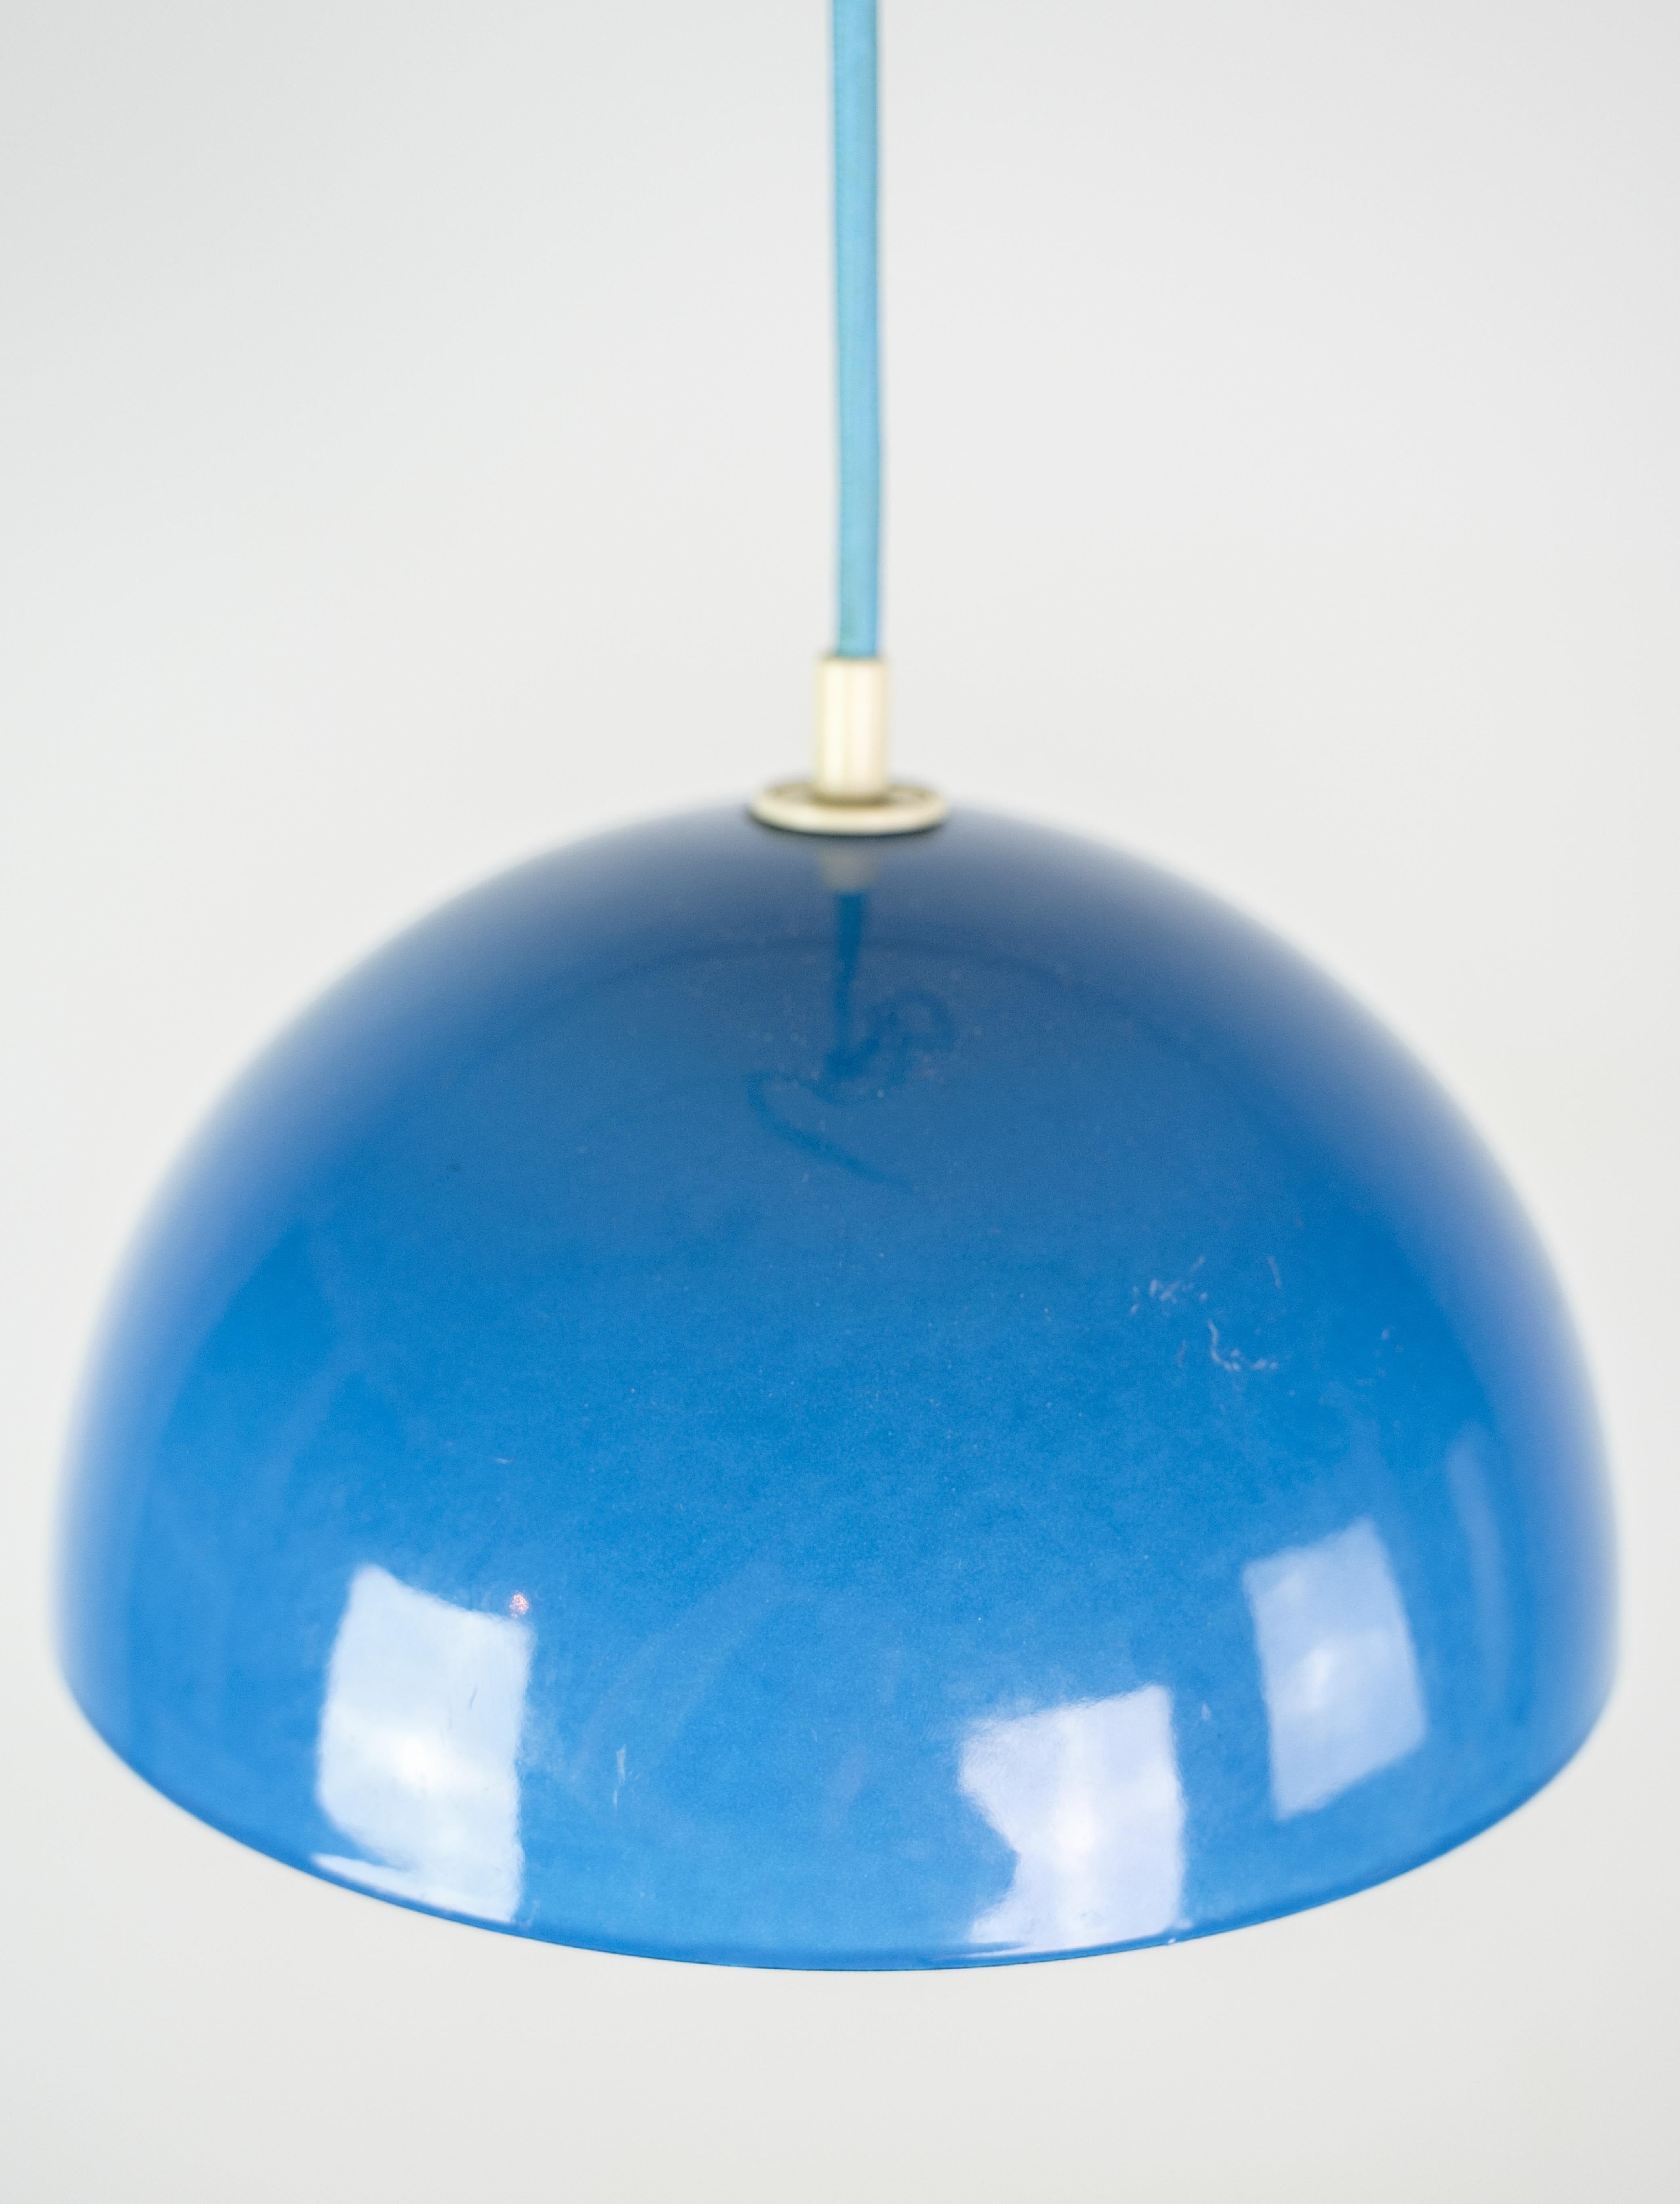 Plafonnier en forme de pot de fleurs, conçu par Verner Panton (1926-1998) VP1 en couleur bleu clair des années 1970.
Dimensions en cm : hauteur:15 diamètre : 21.